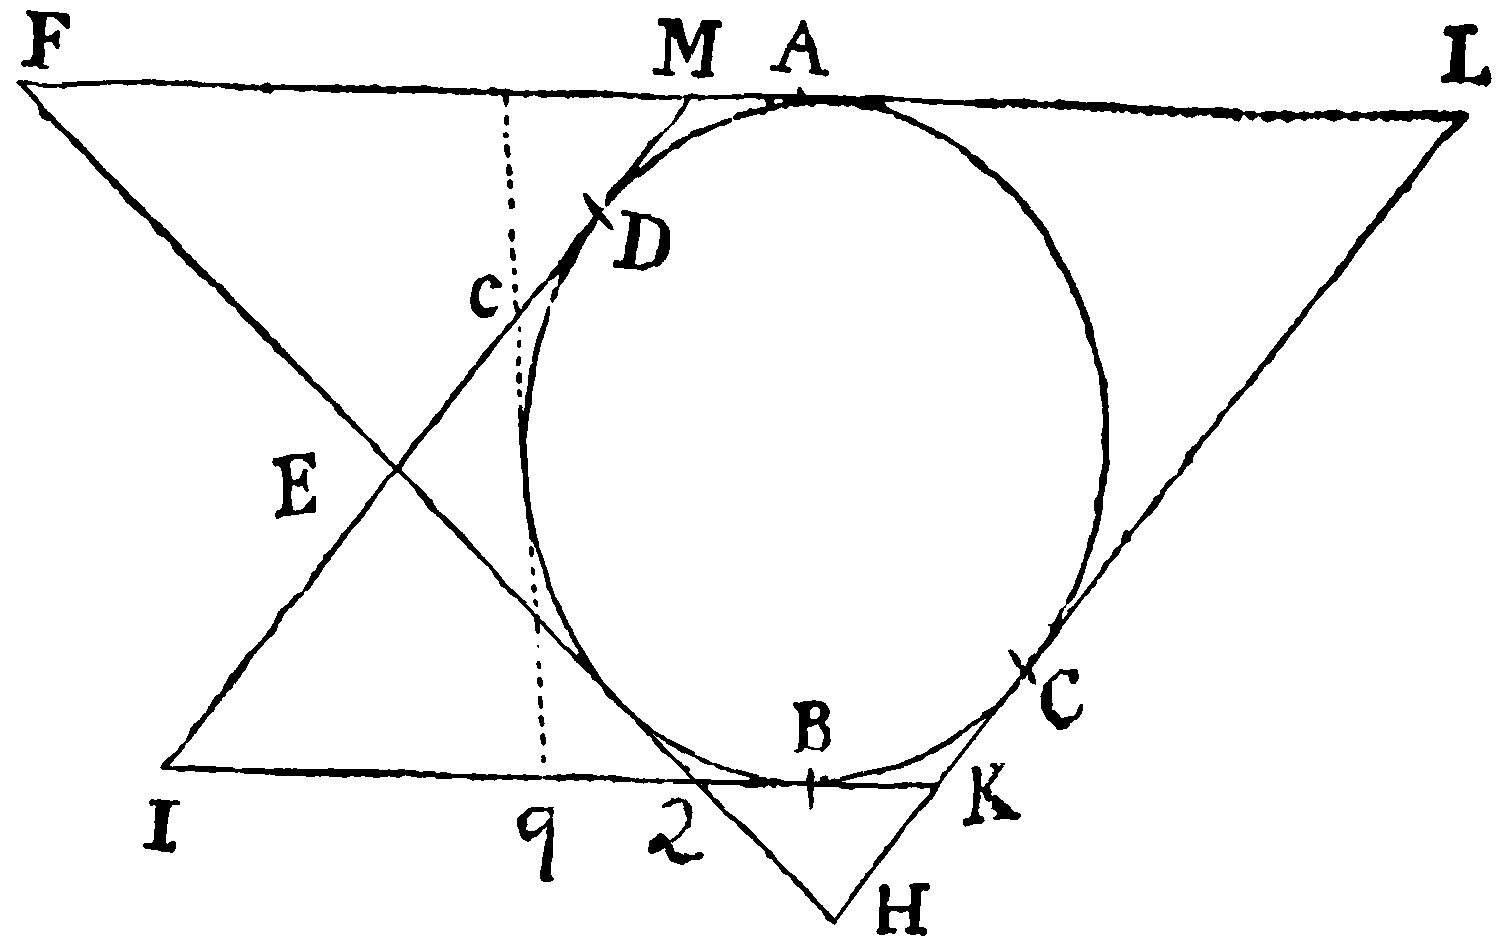 Figure for Lemma XXV.